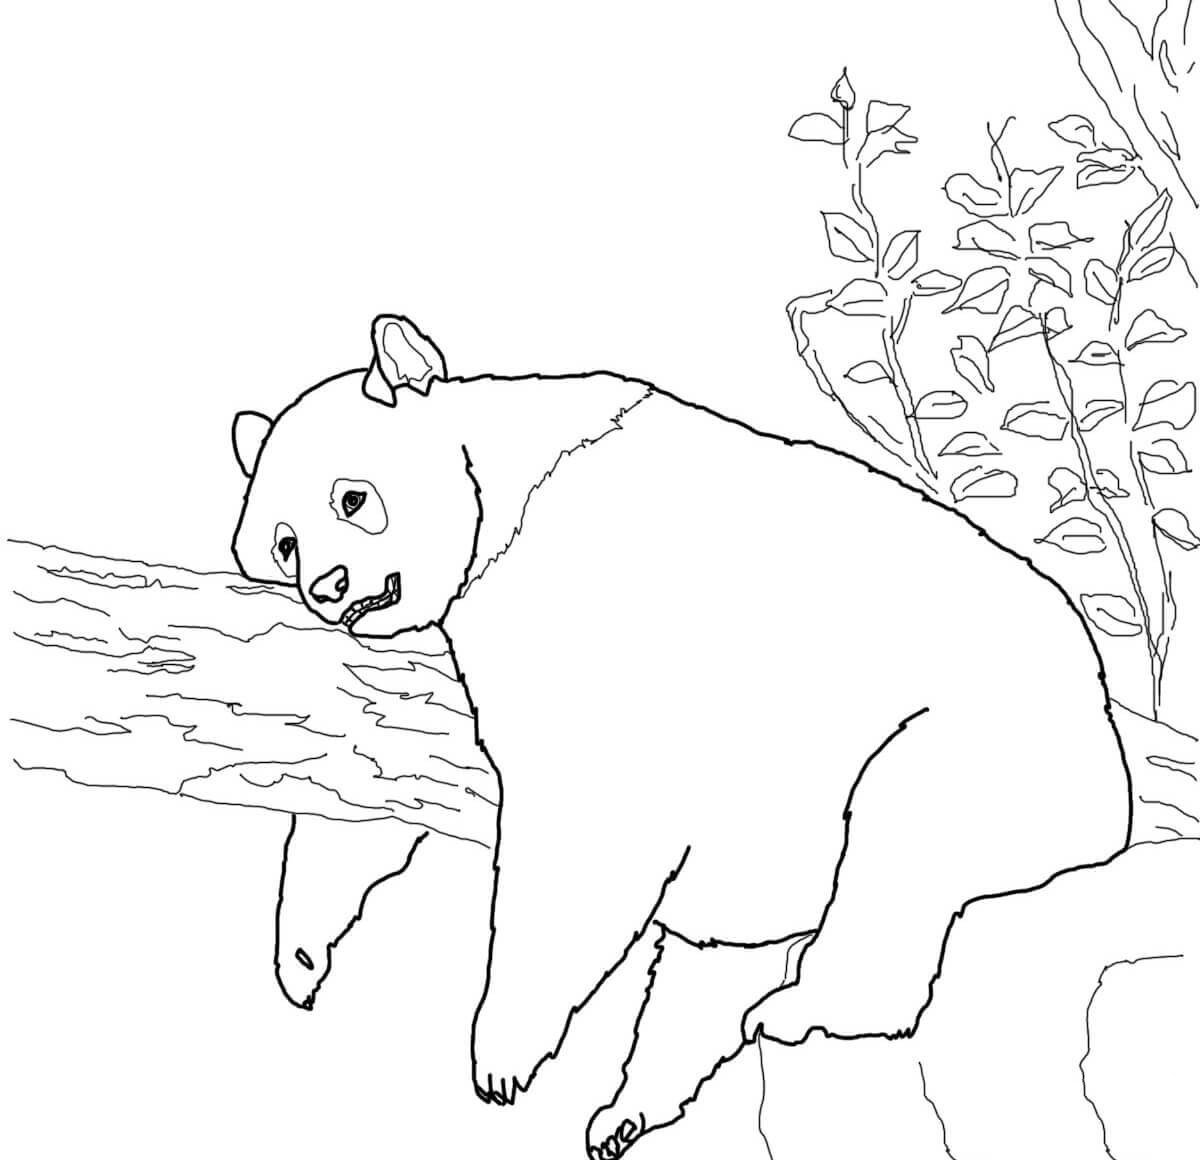 大熊猫怎么画躺着图片